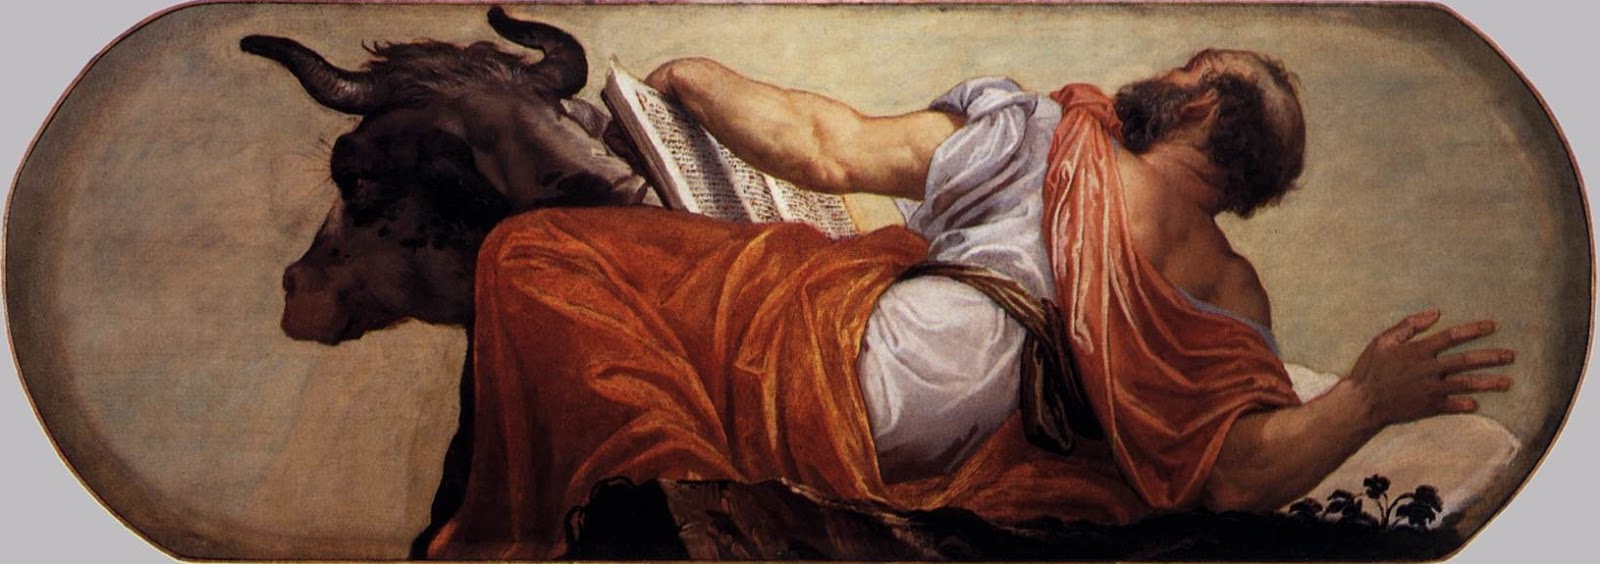 Paolo+Veronese-1528-1588 (14).jpg